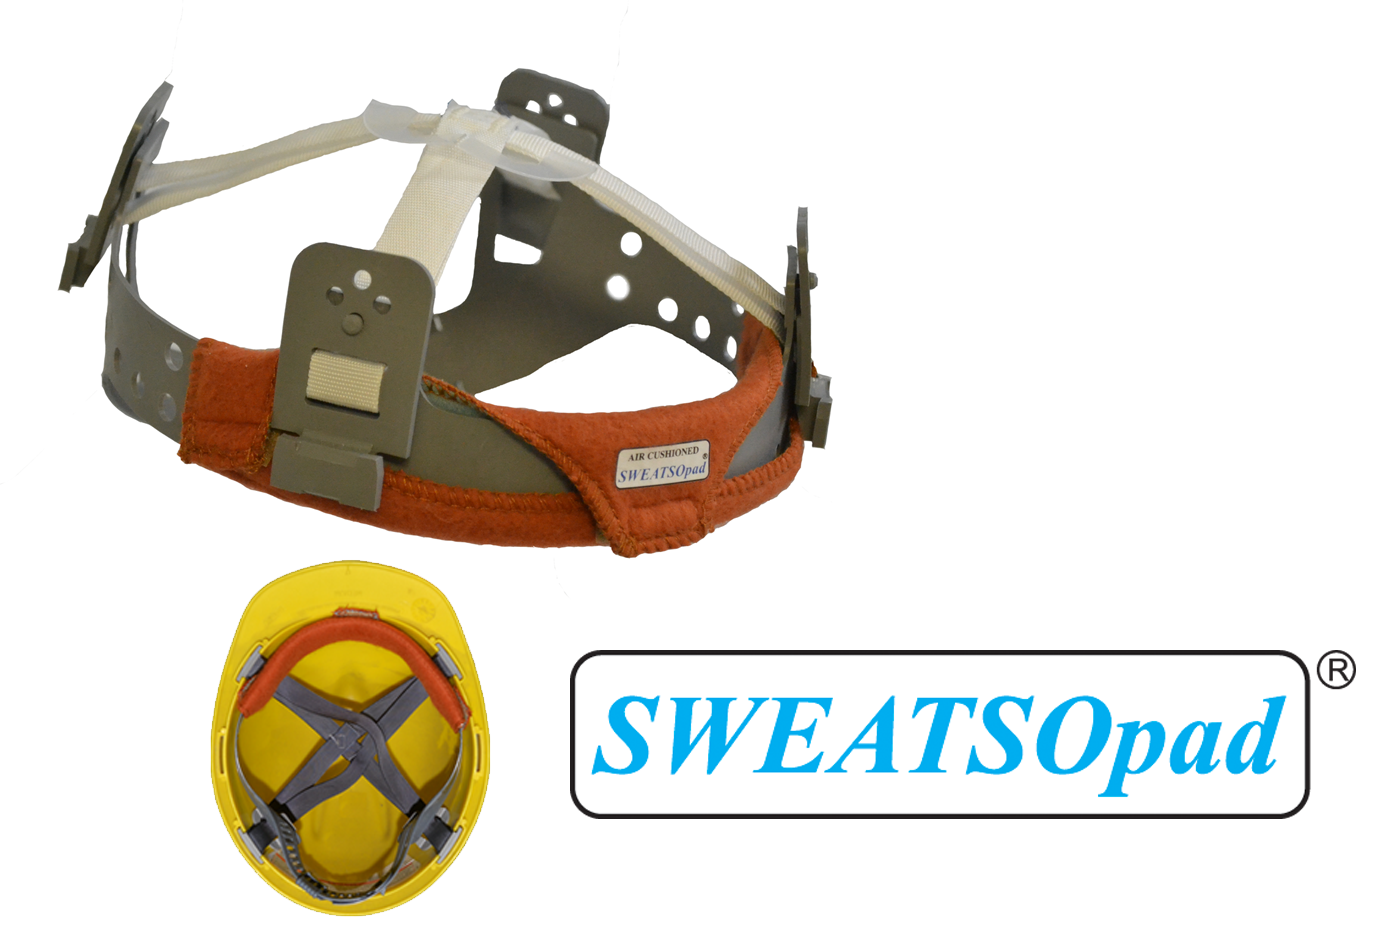 2packs of 2 Weldas Sweatband Sweatsopads Welding Helmet Comforter Sweat for sale online